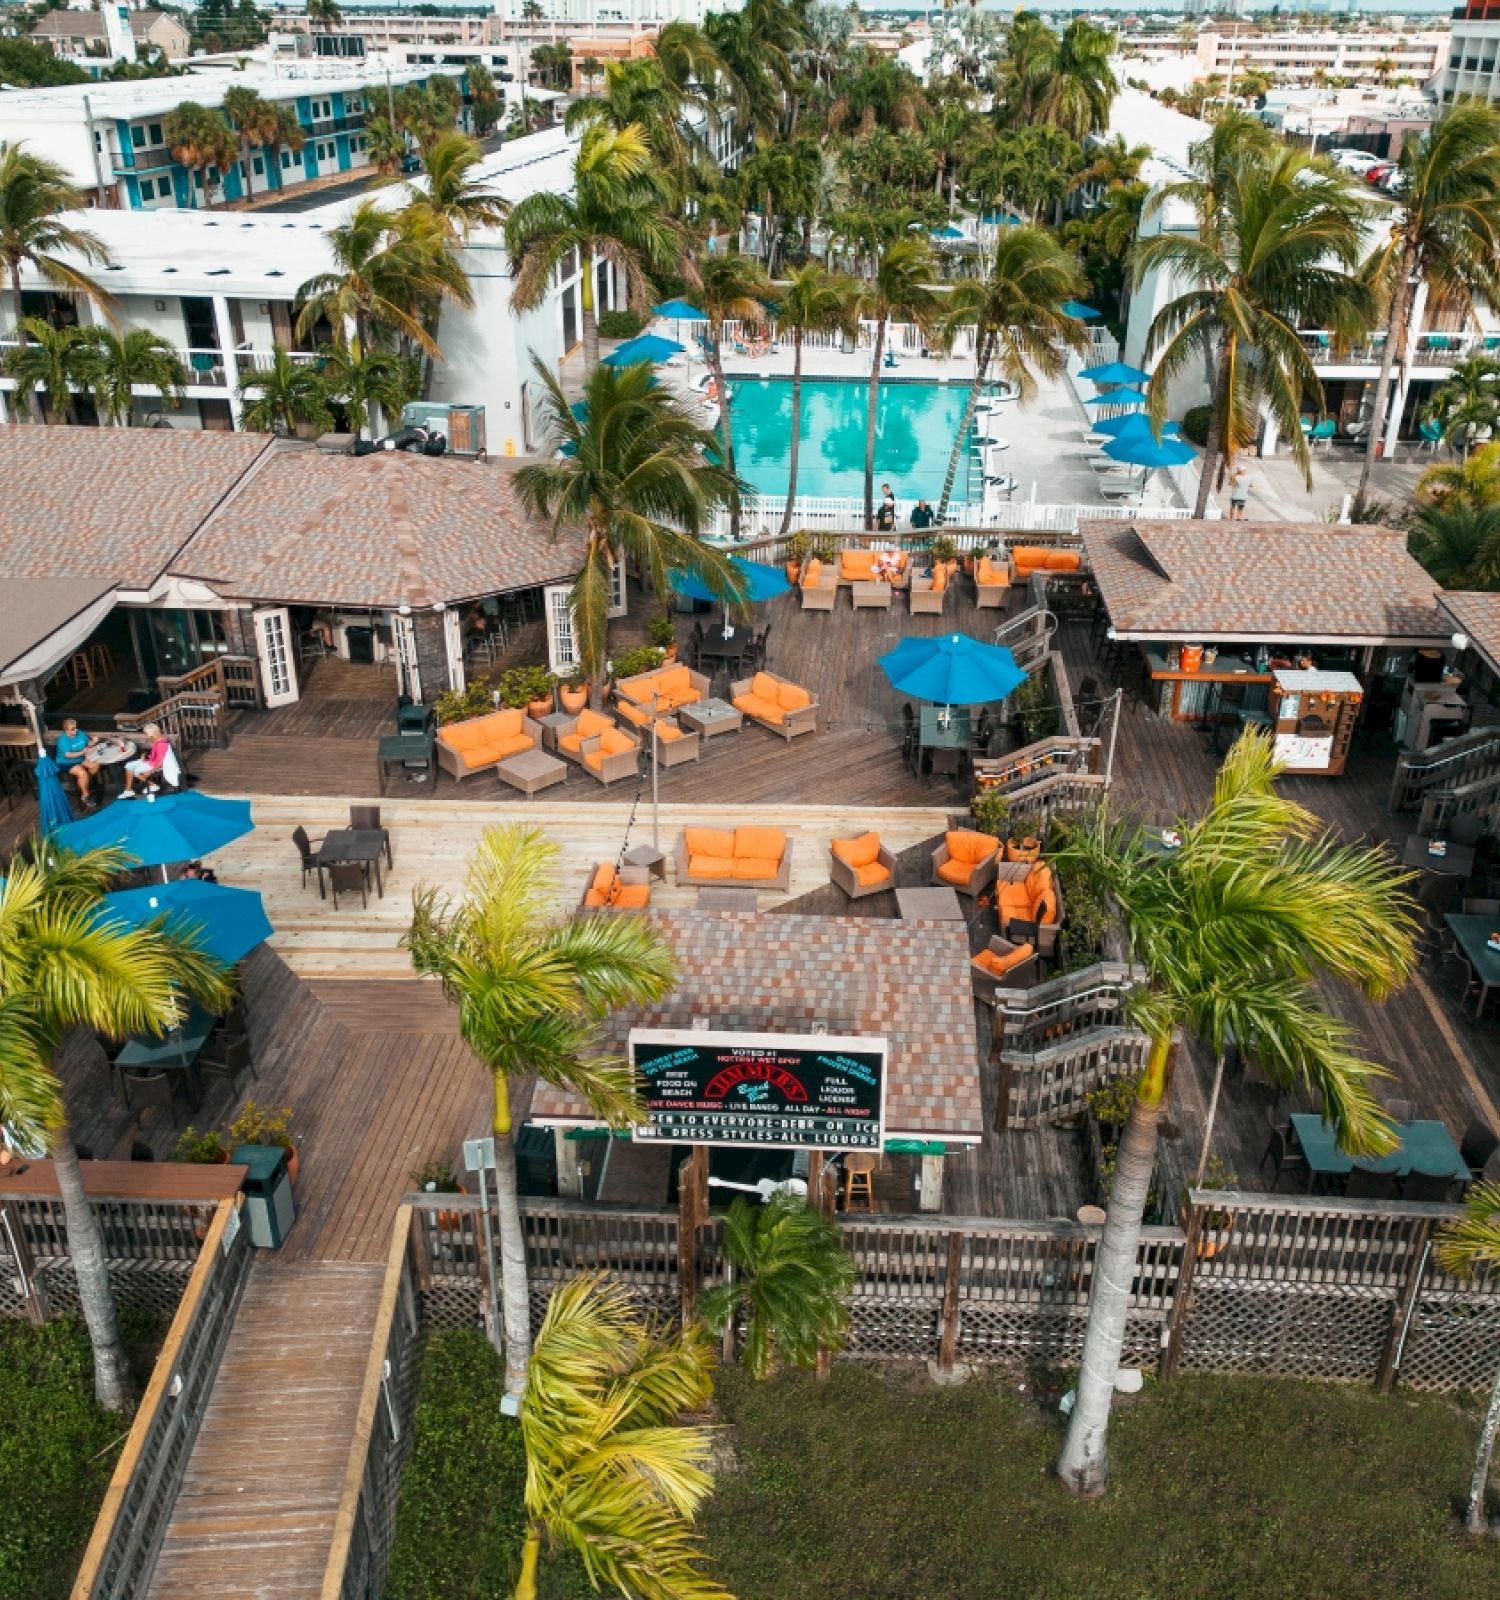 The Beachcomber Beach Resort Hotel